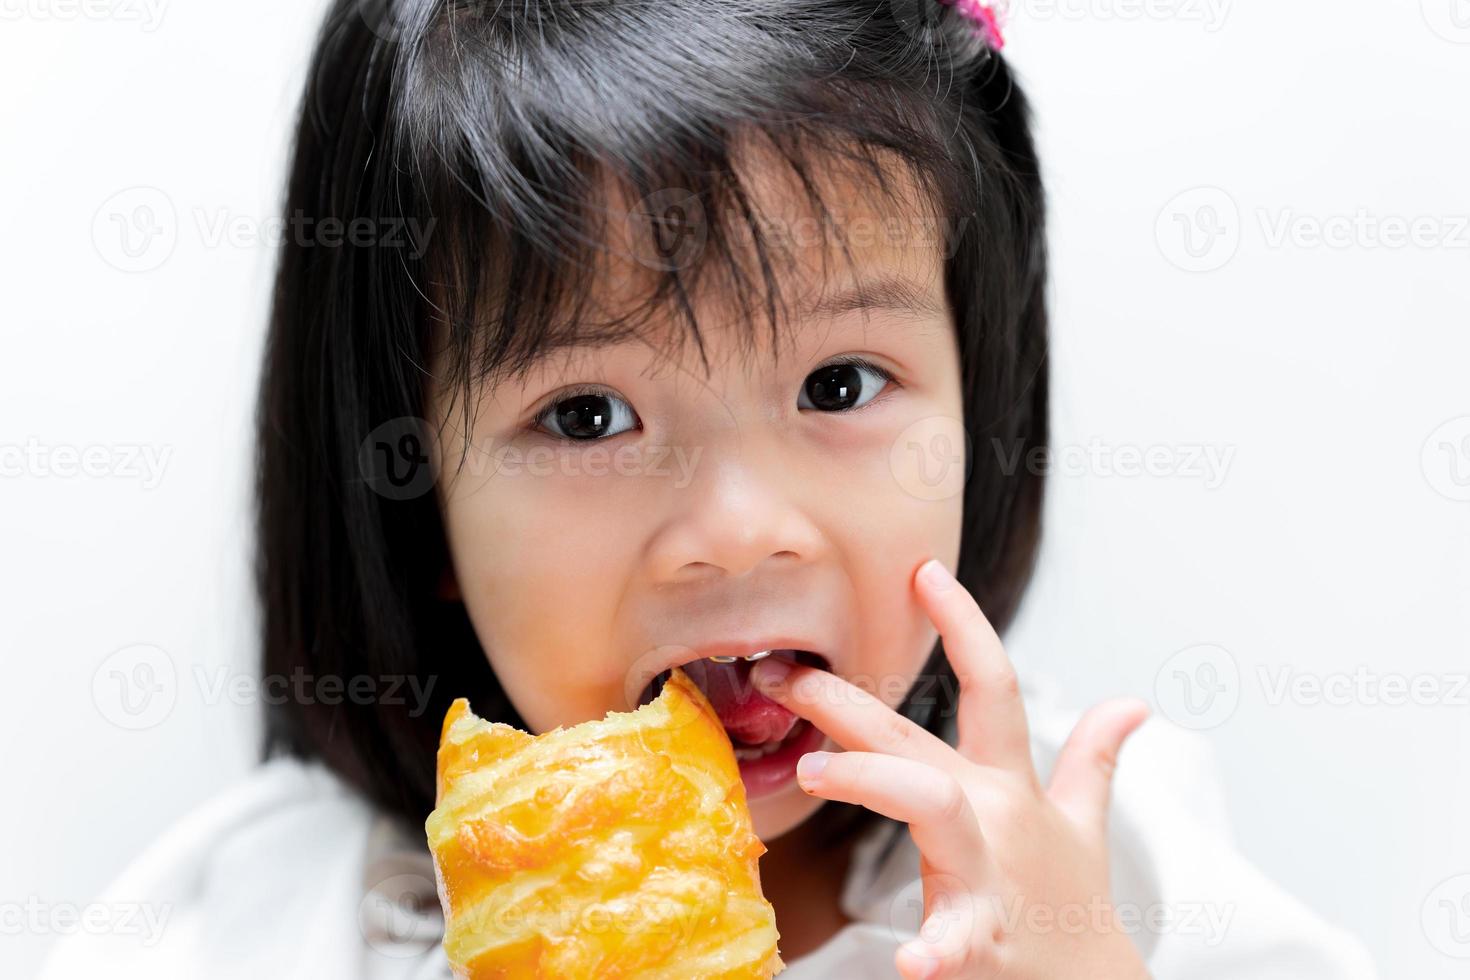 Cara de niño feliz lamiendo el dedo que sostenía el pan largo. los niños comieron, comieron los largos bollos con gusto. foto